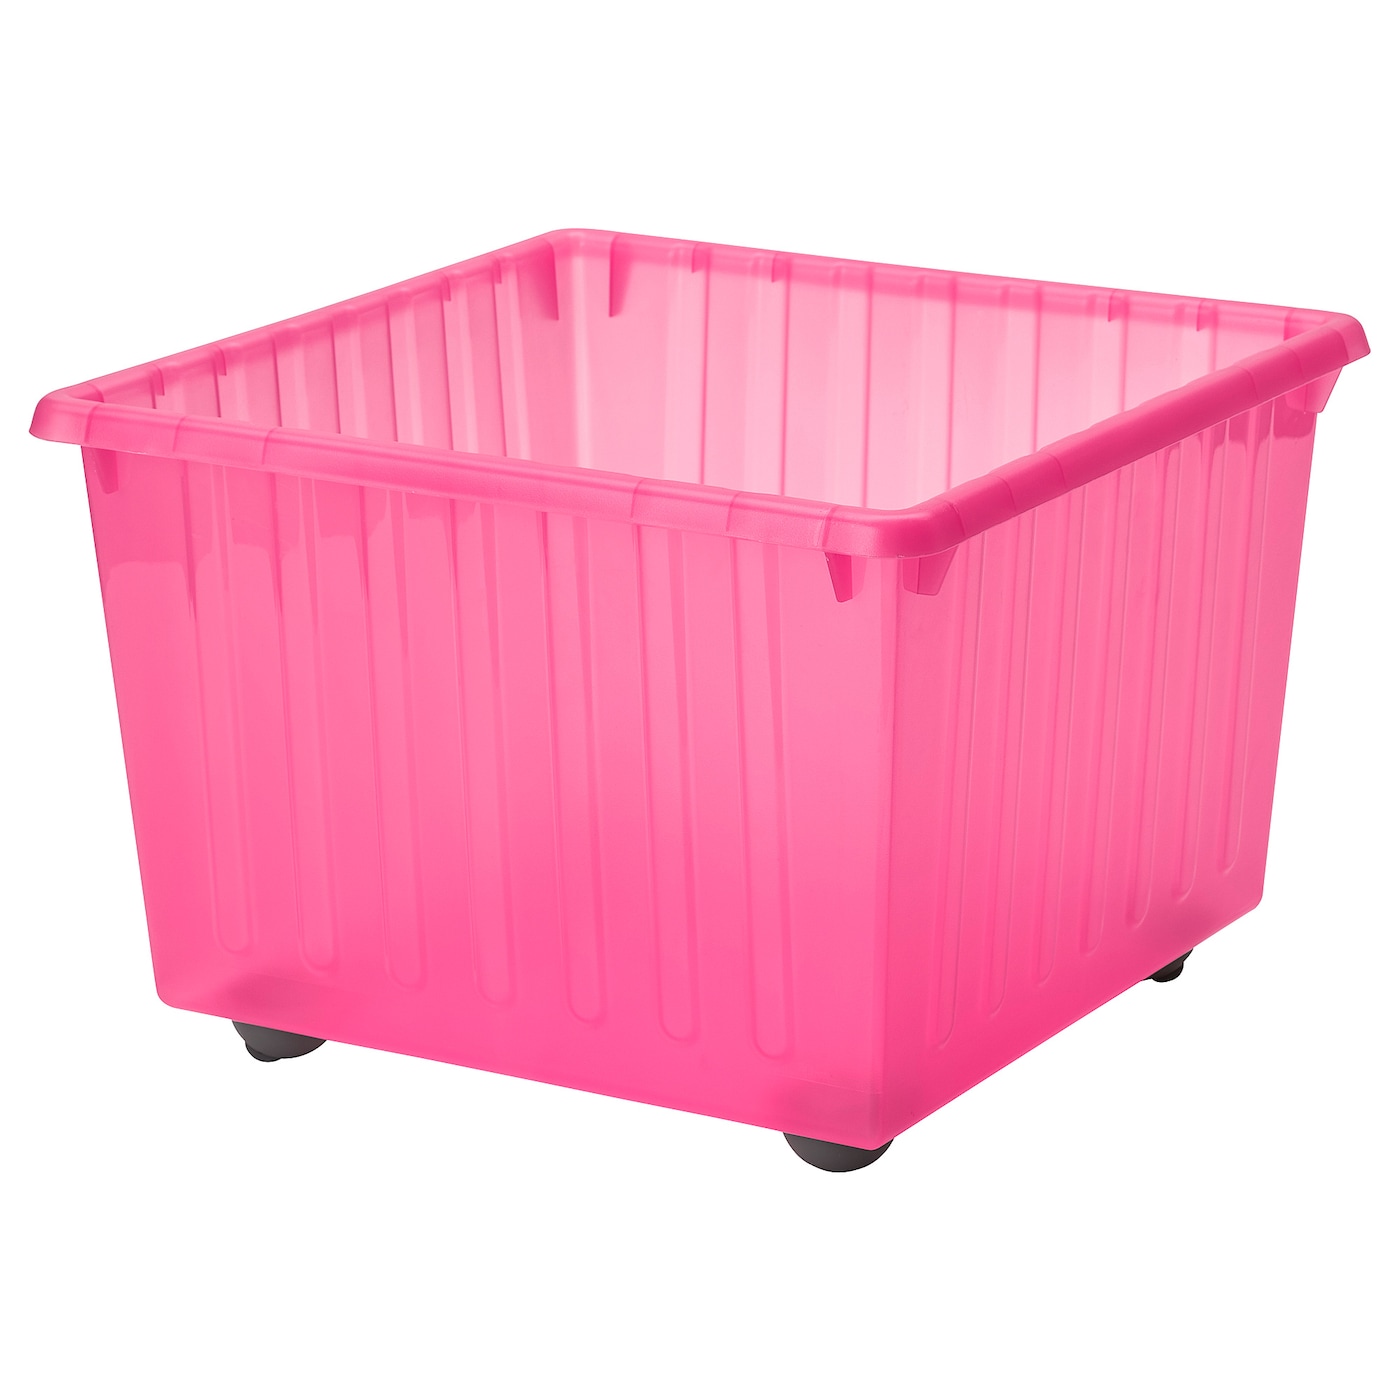 Ящик для хранения на колесиках - VESSLA IKEA/ ВЕССЛА ИКЕА, 39х39 см, розовый